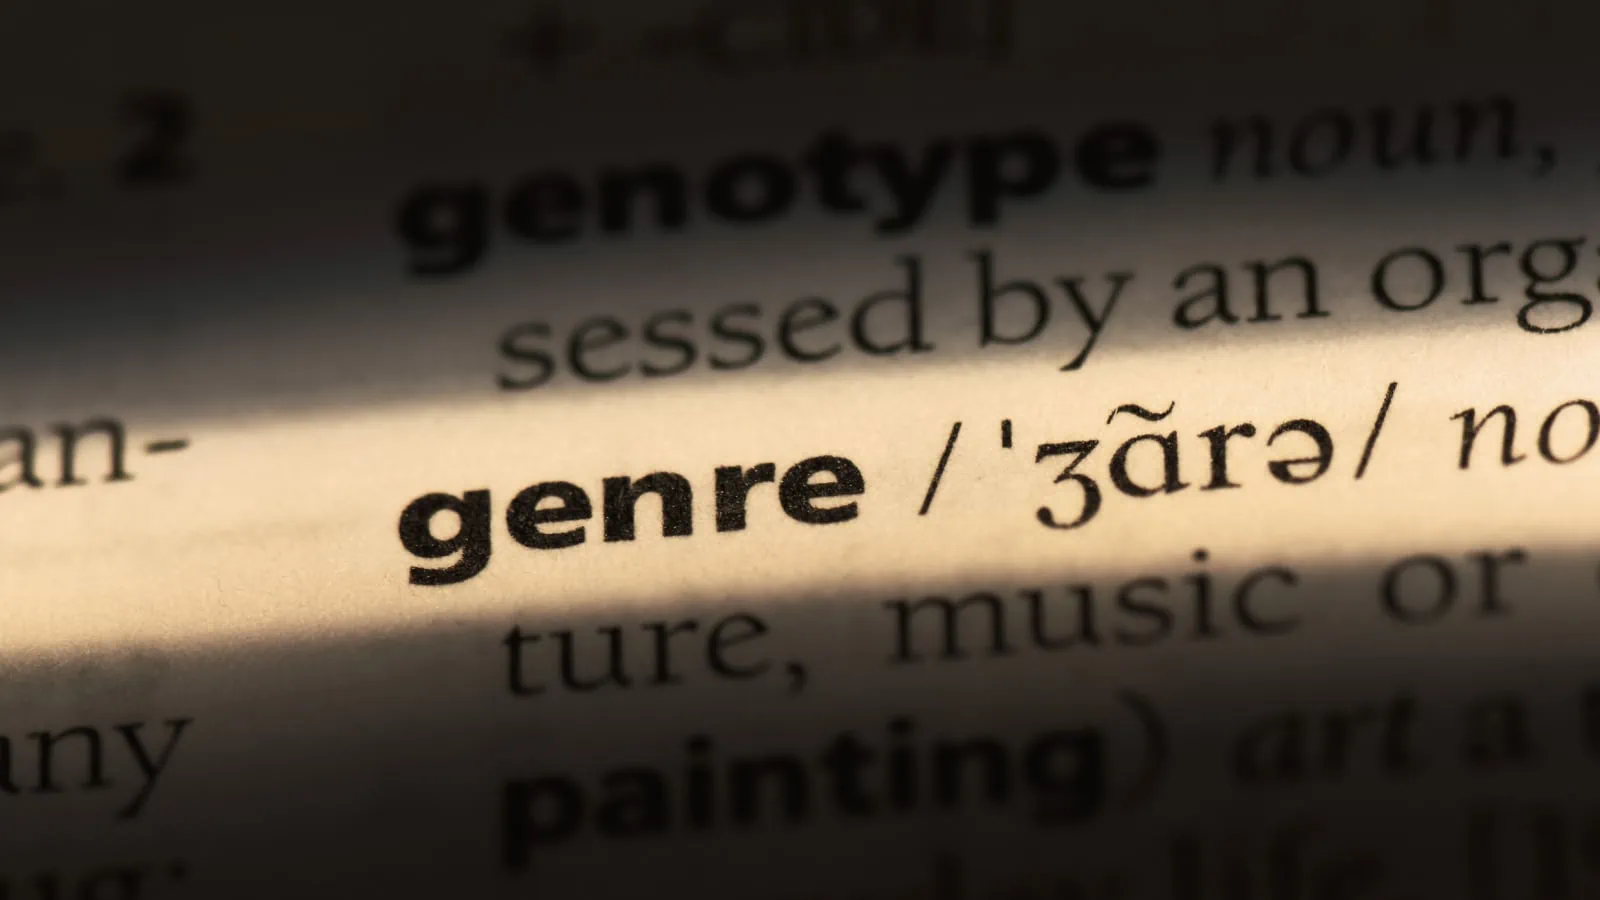 genre dictionary